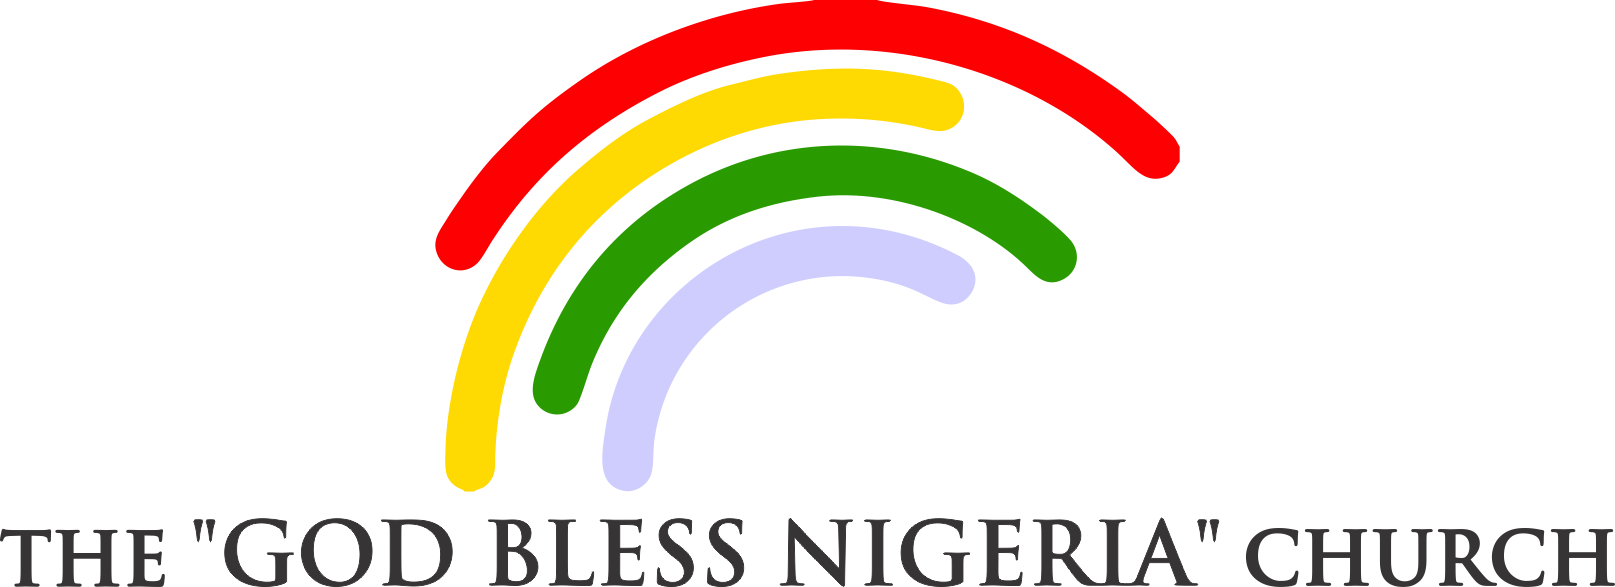 God Bless Nigeria Church - God Bless Nigeria Church (1615x587)